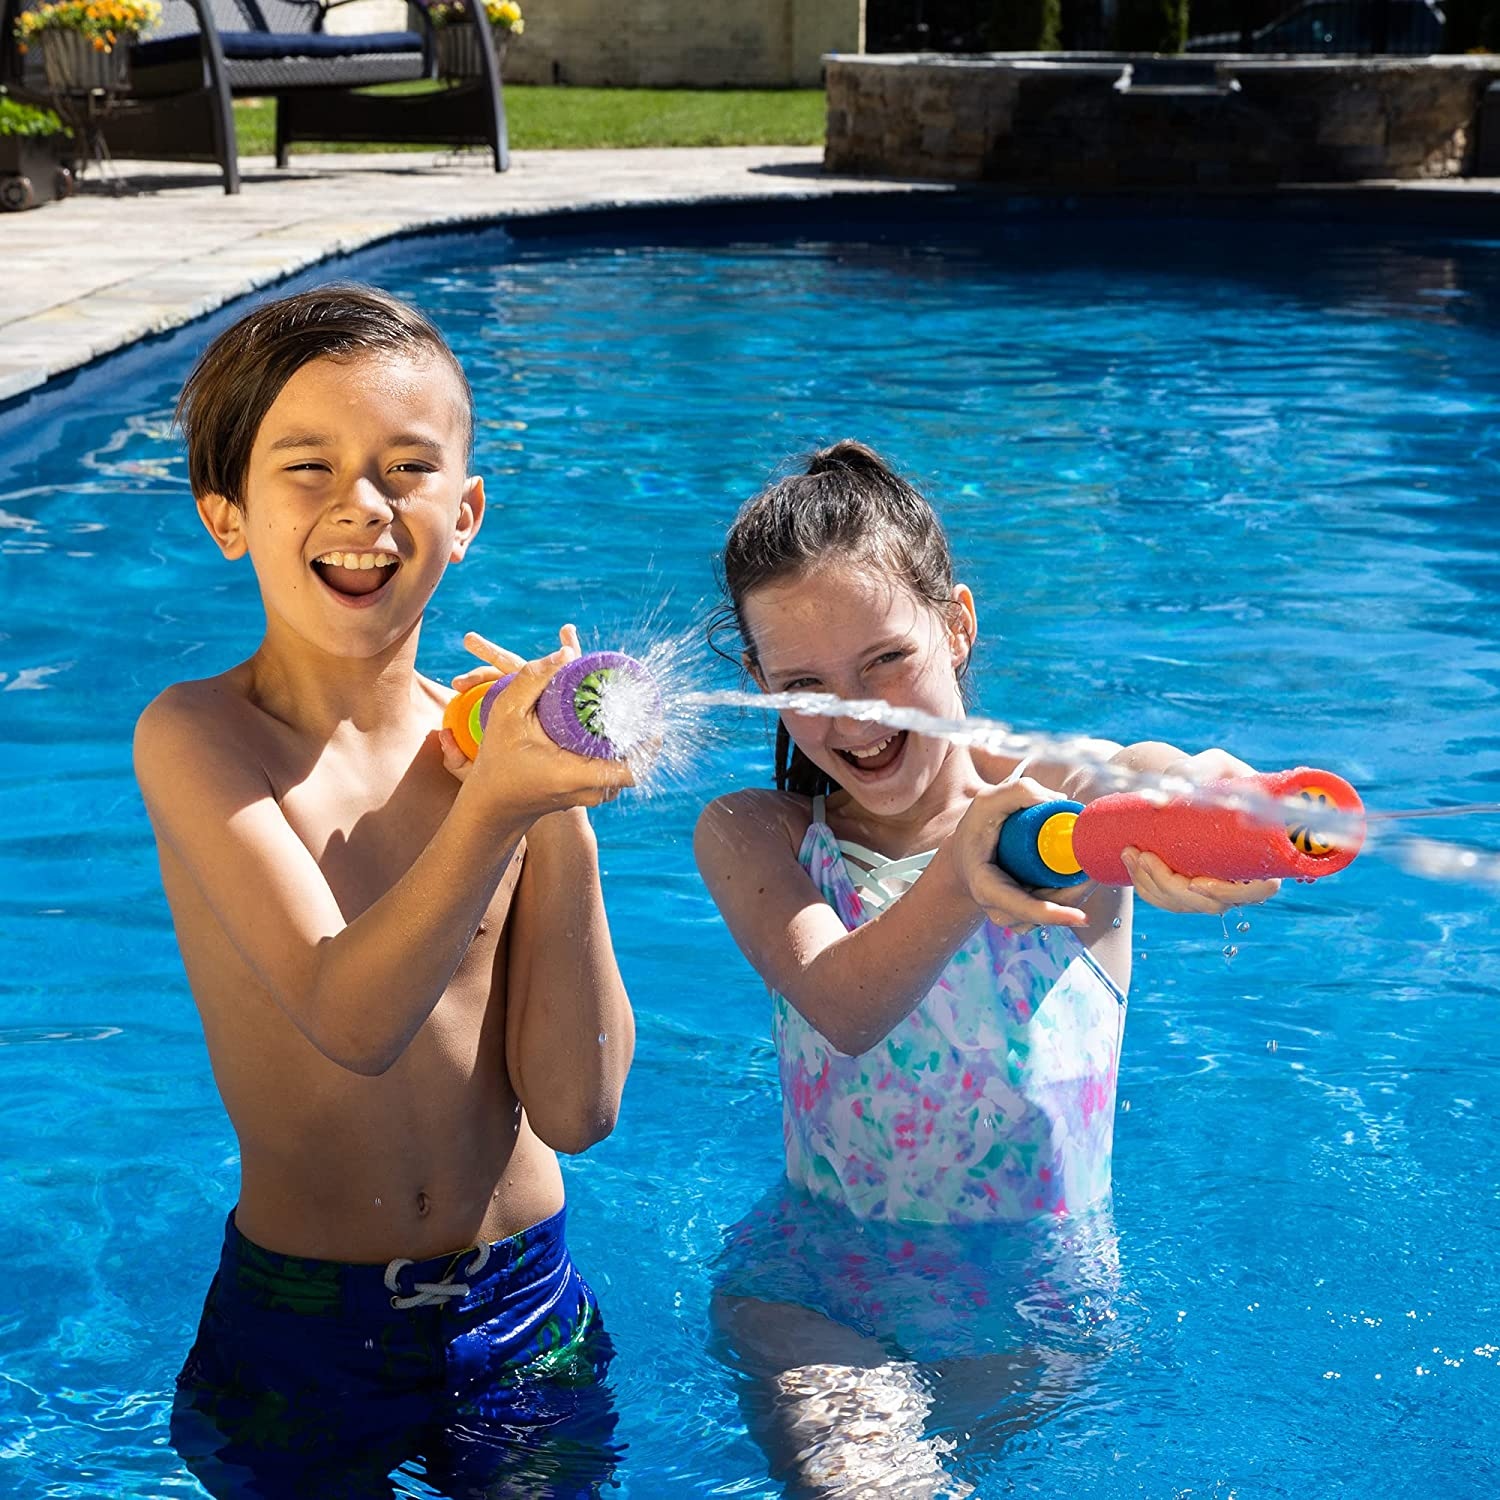 Water SAUCER Kids Fun Summer Spring Pool Beach Toy SOAK & THROW IT ORANGE FACE 